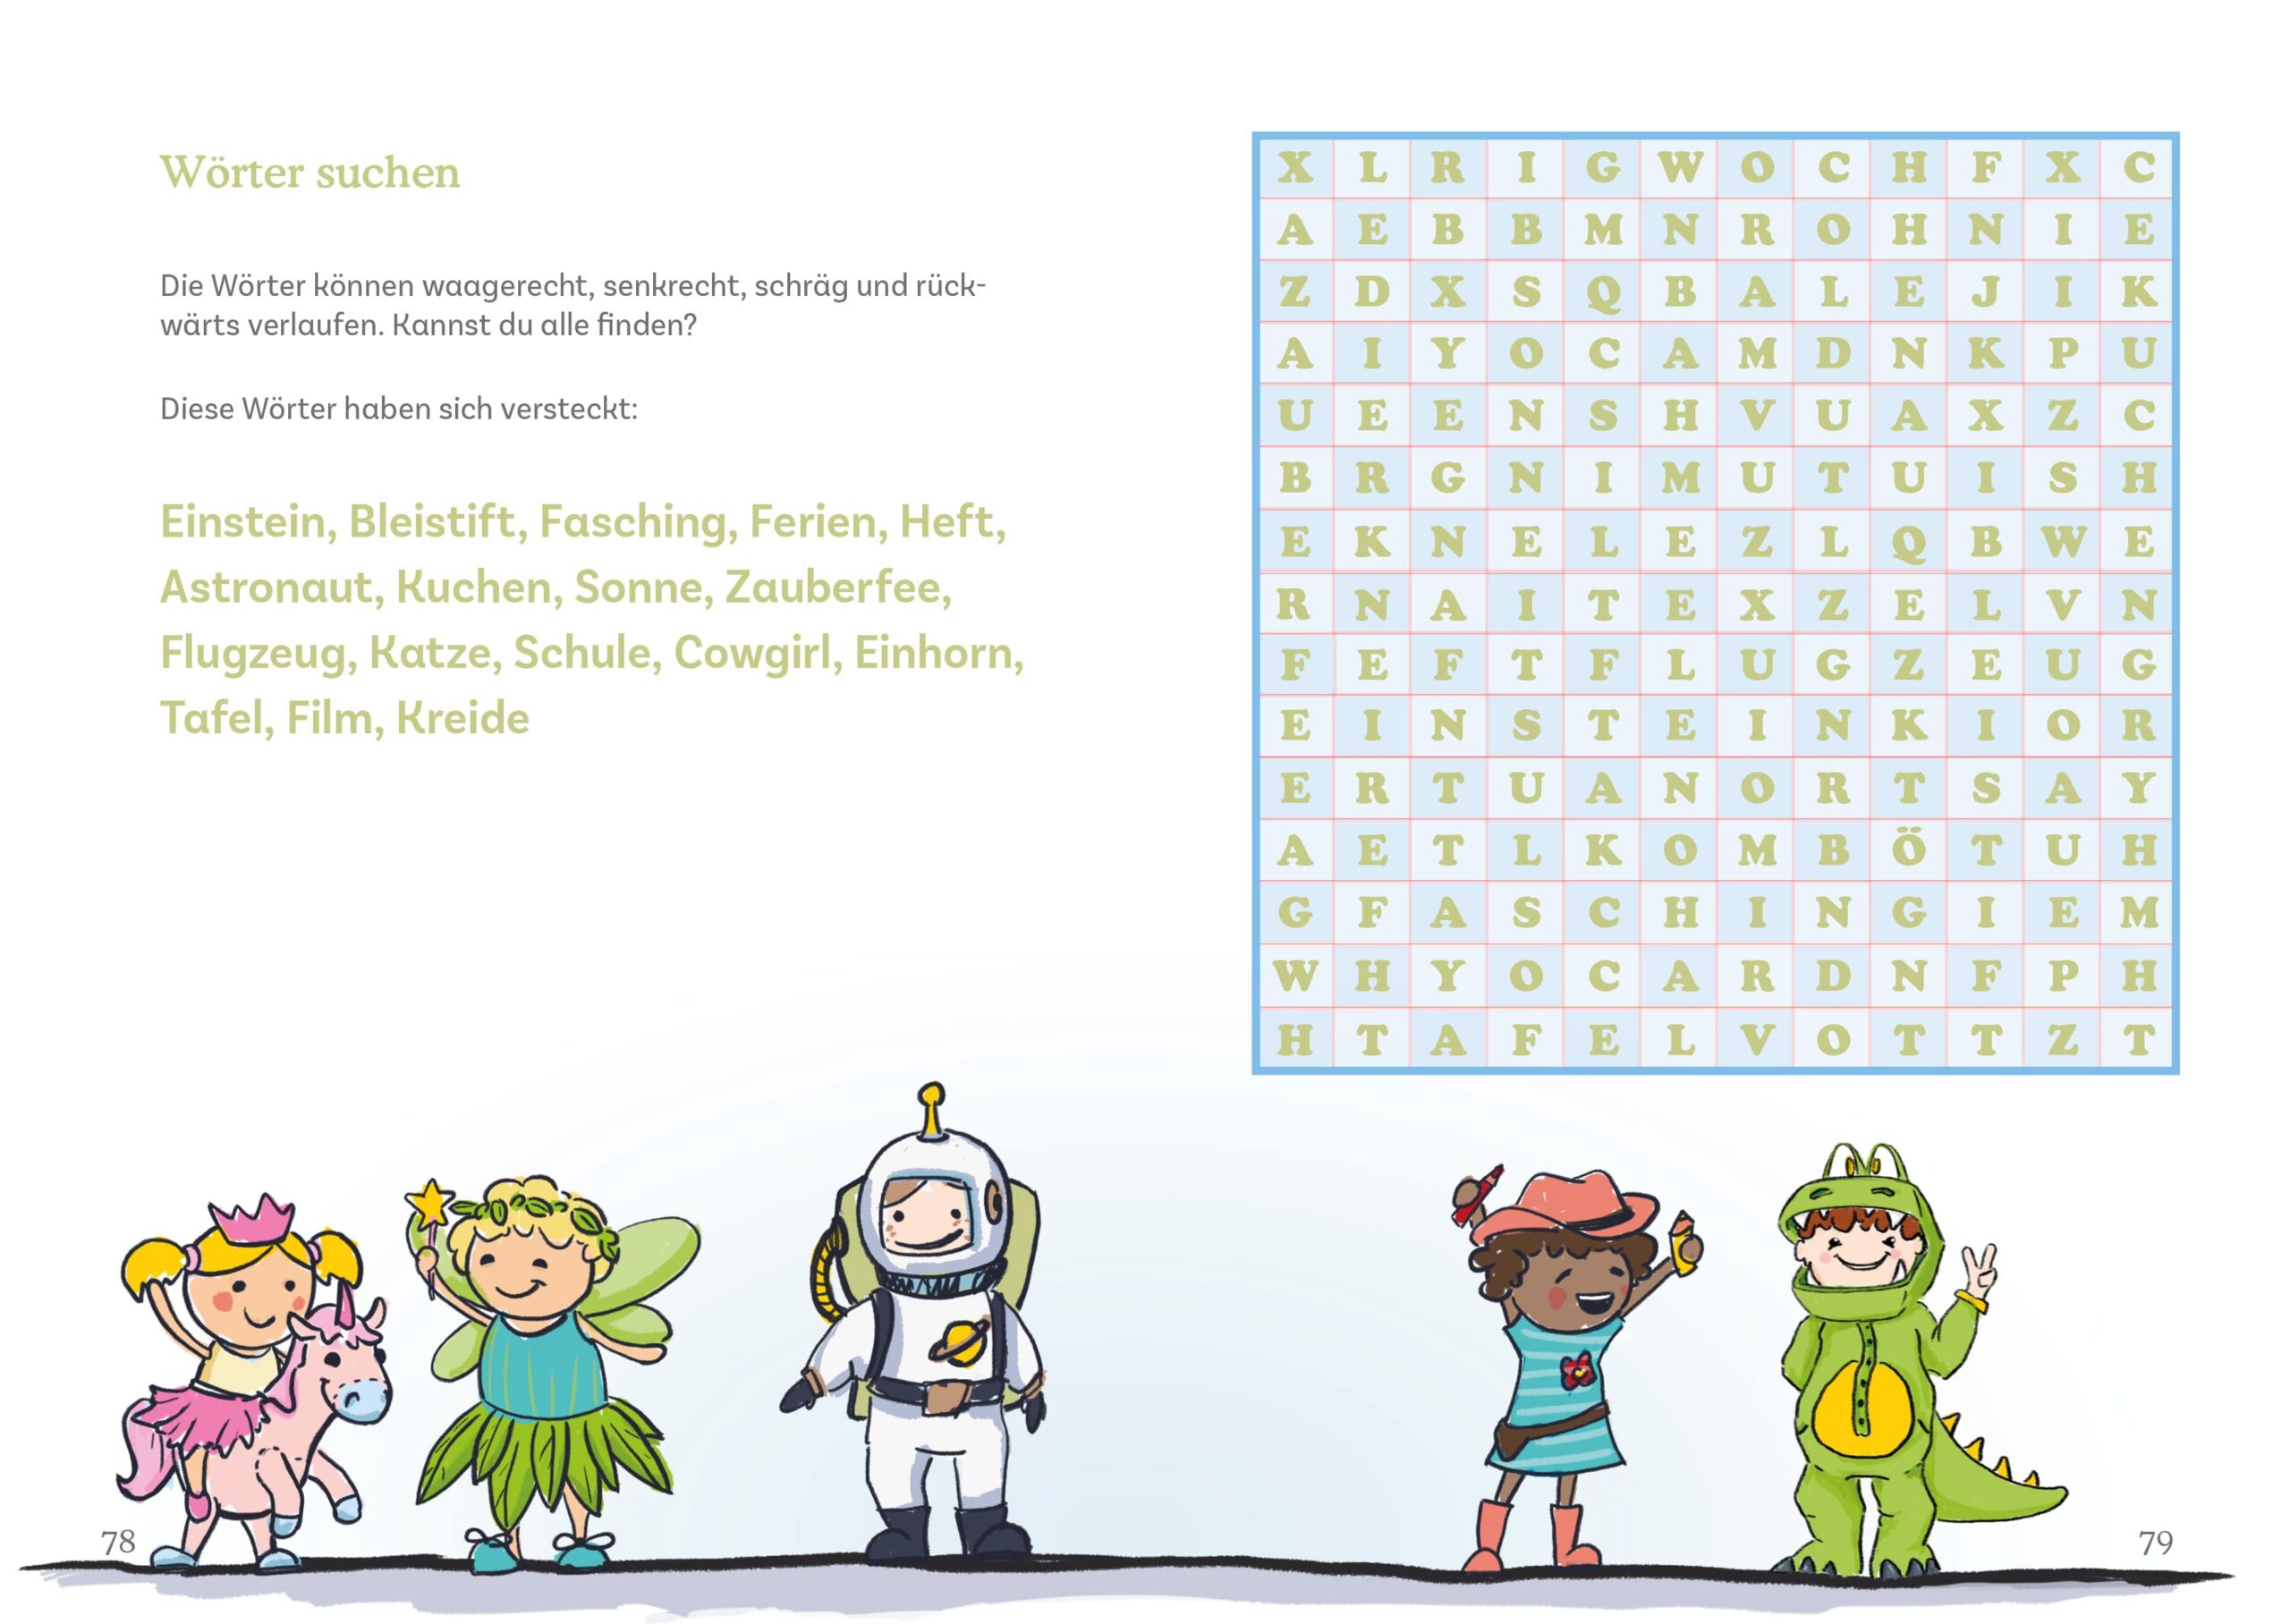 Gestaltet wurde hier eine Doppelseite mit einem Wörtersuchrätsel, darunter sind fünf Illustrationen von Kindl in verschiedenen Karnevalskostümen abgebildet.